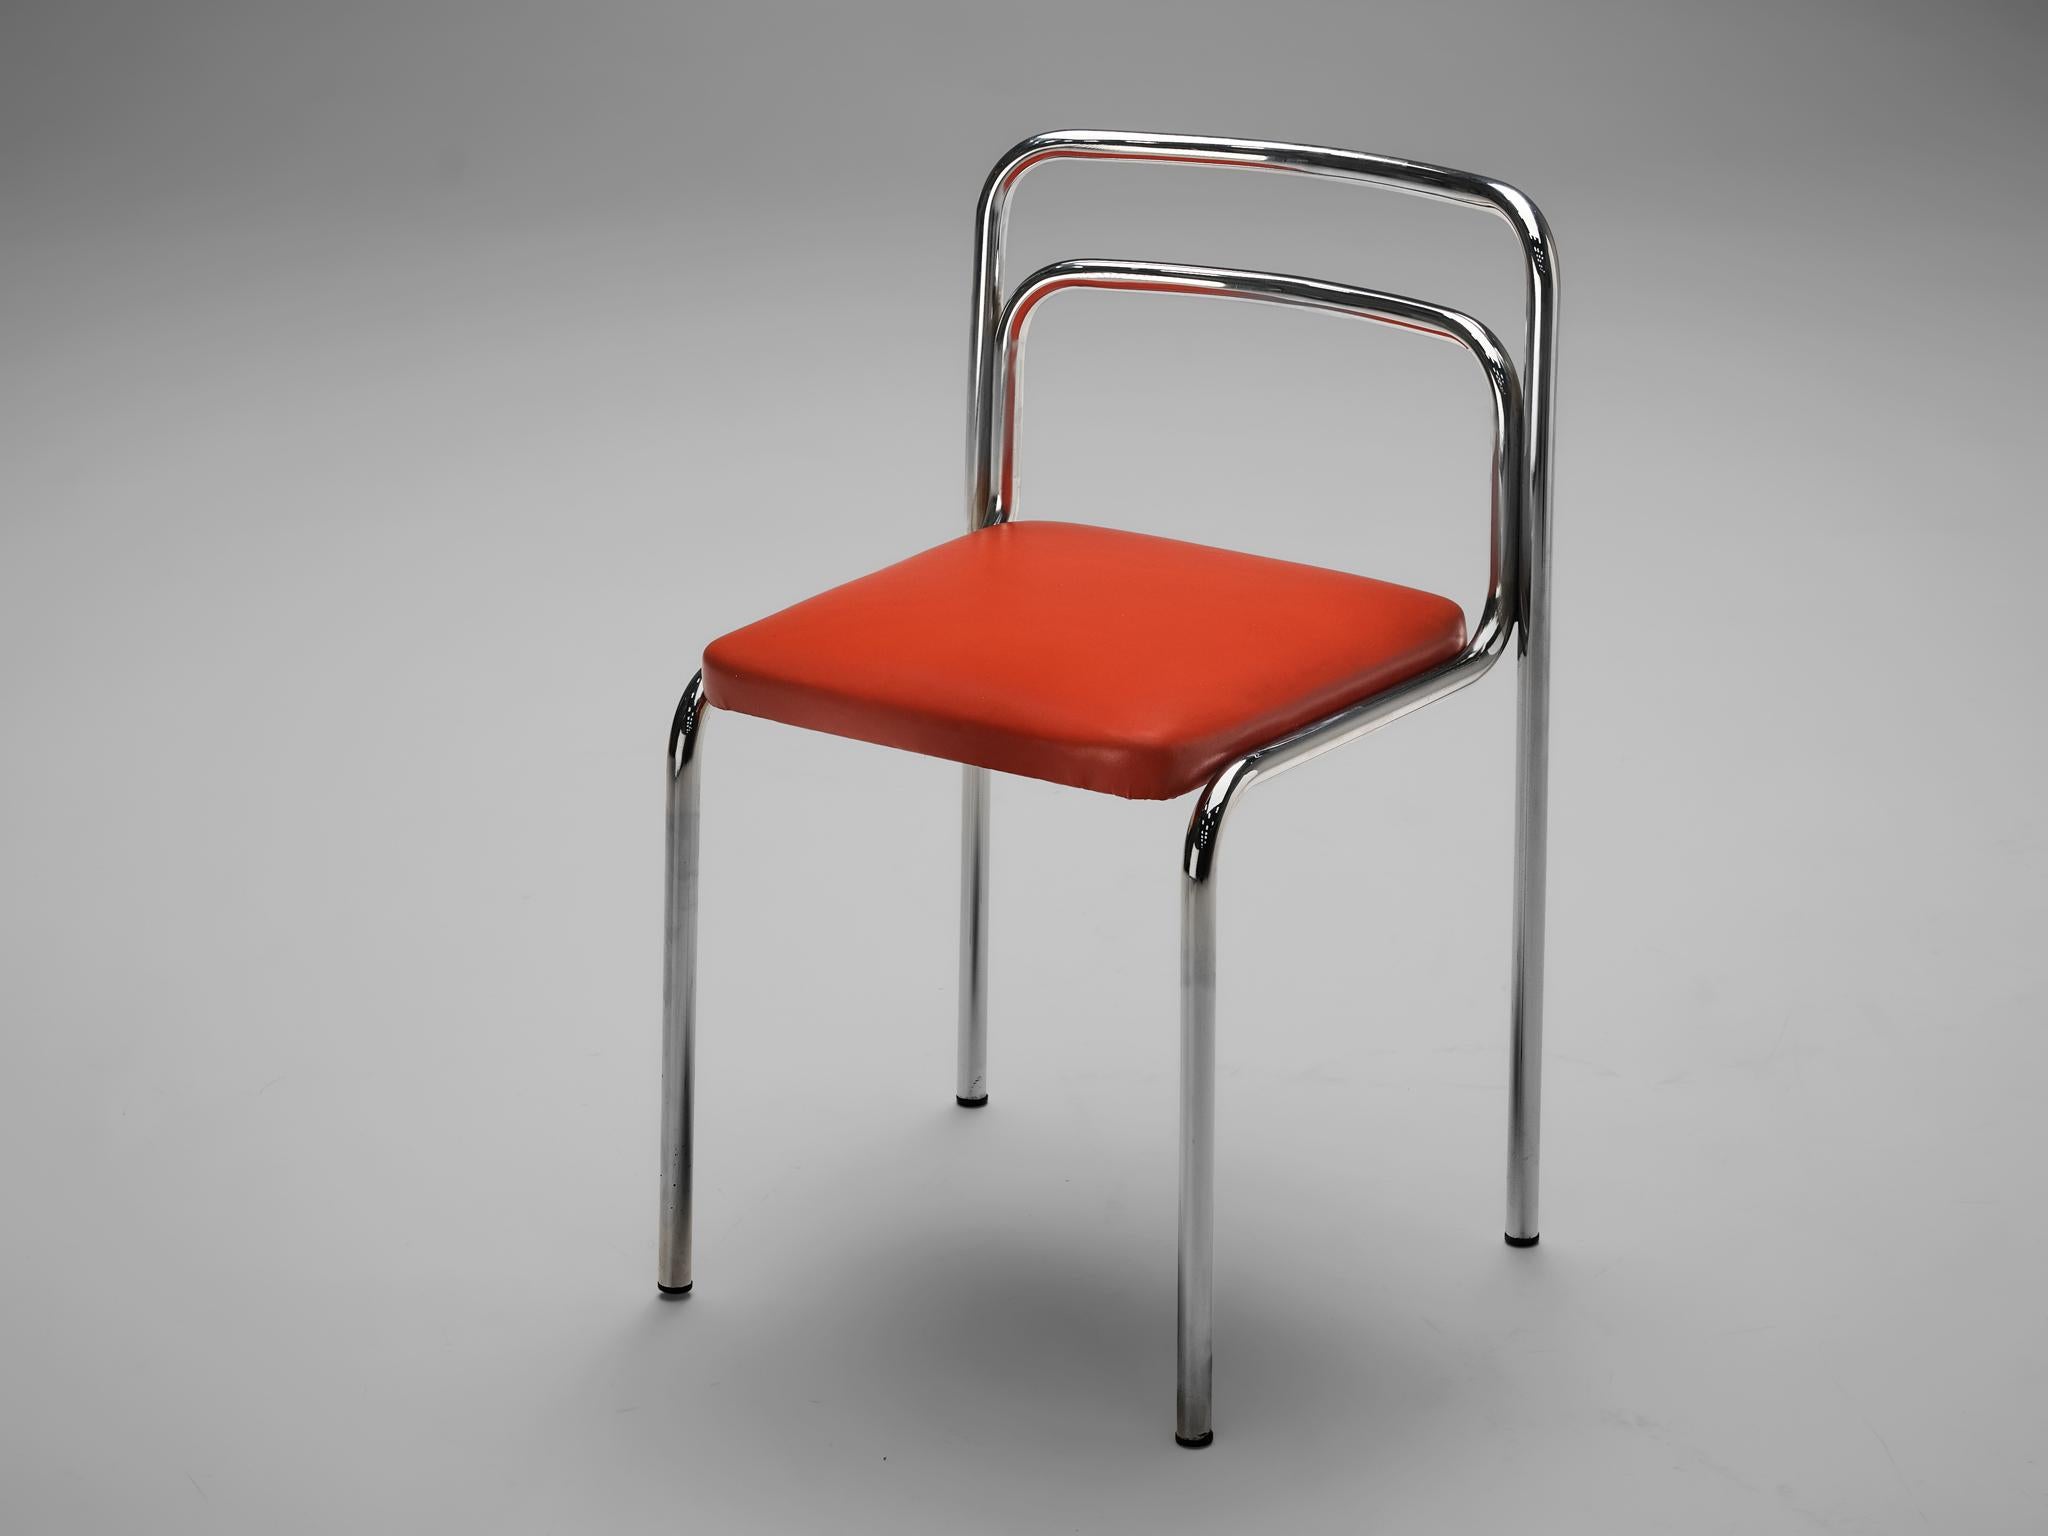 Vittorio Parigi & Nanni Prina pour Molteni, chaise de bureau modèle 'Orix', simili cuir, métal chromé, Italie, circa. 1970. 

Cette chaise de Vittorio Parigi & Nanni Prina fait partie de la série 'Orix'. Ce design rappelle vraiment l'éthique des